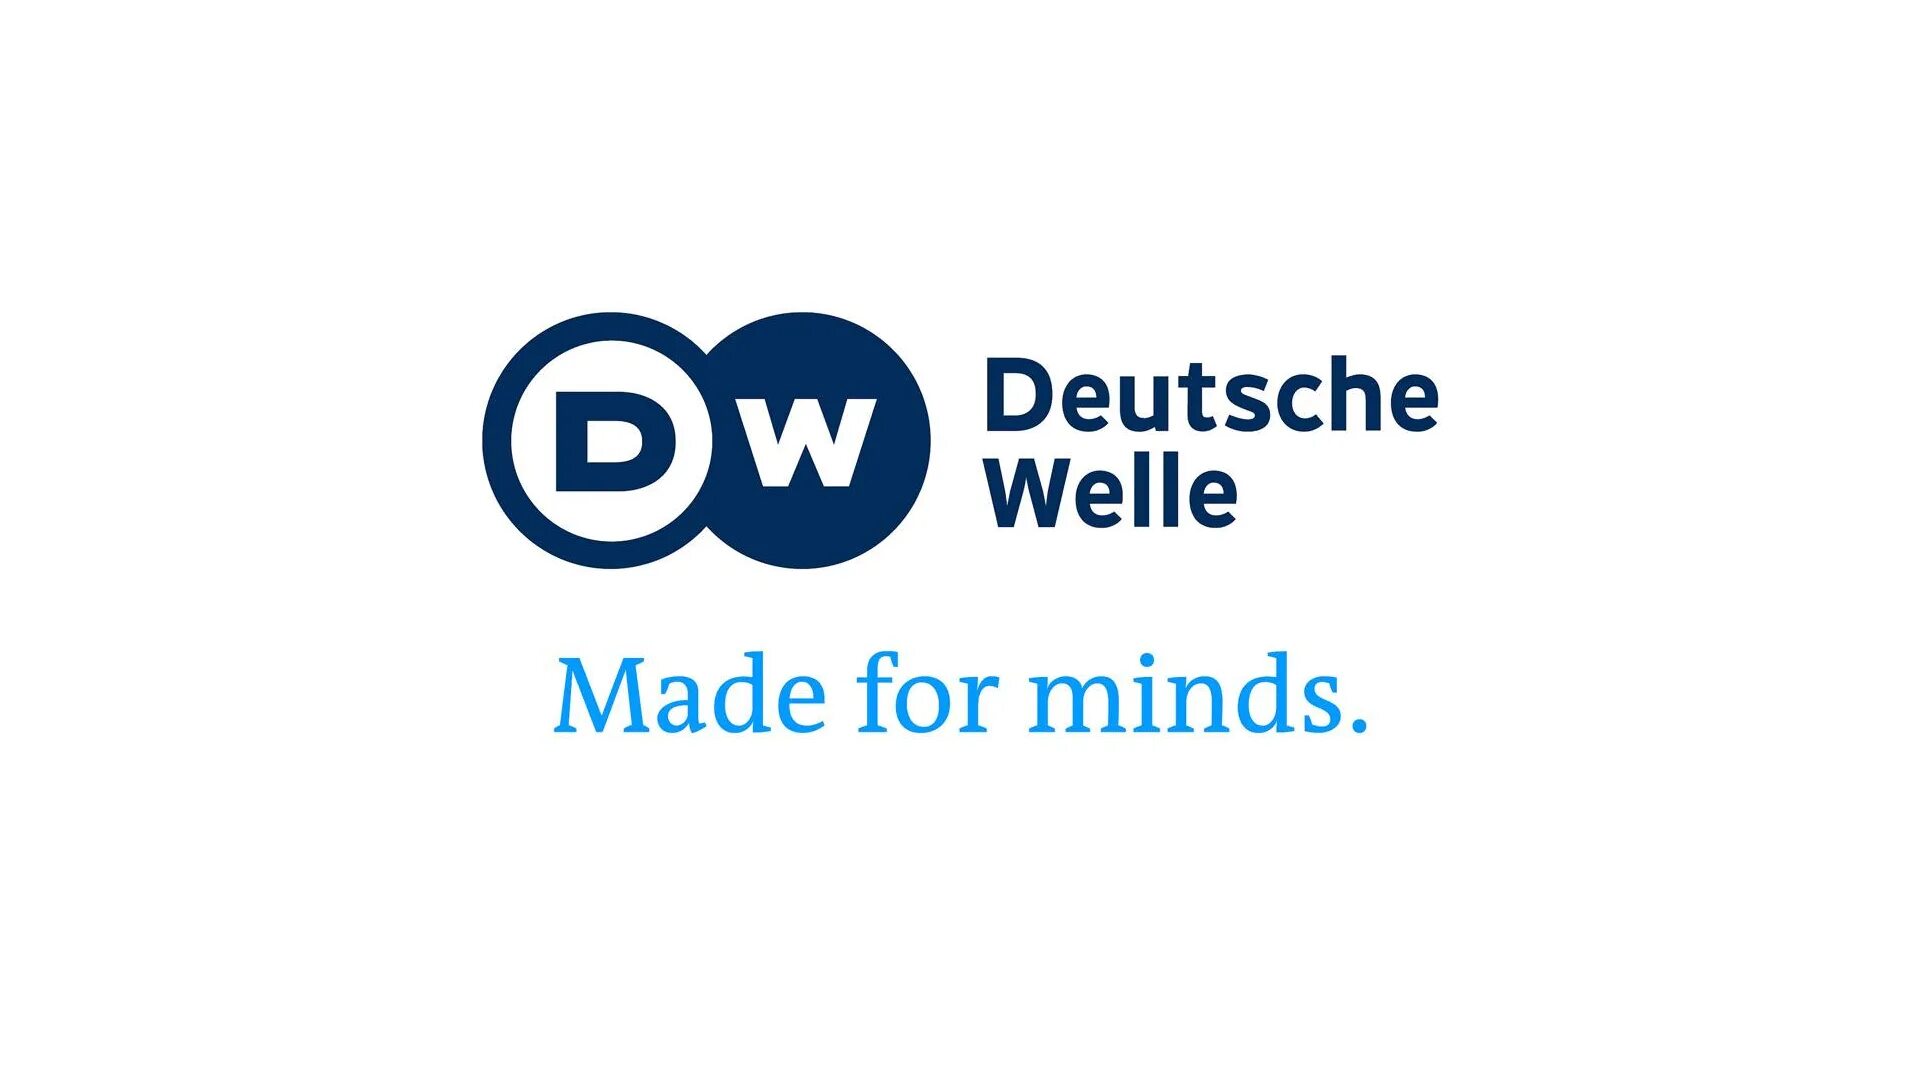 Дойче велле на русском ютуб. Deutsche Welle логотип. Deutsche Welle («немецкая волна»). DW логотип. DW Телеканал.